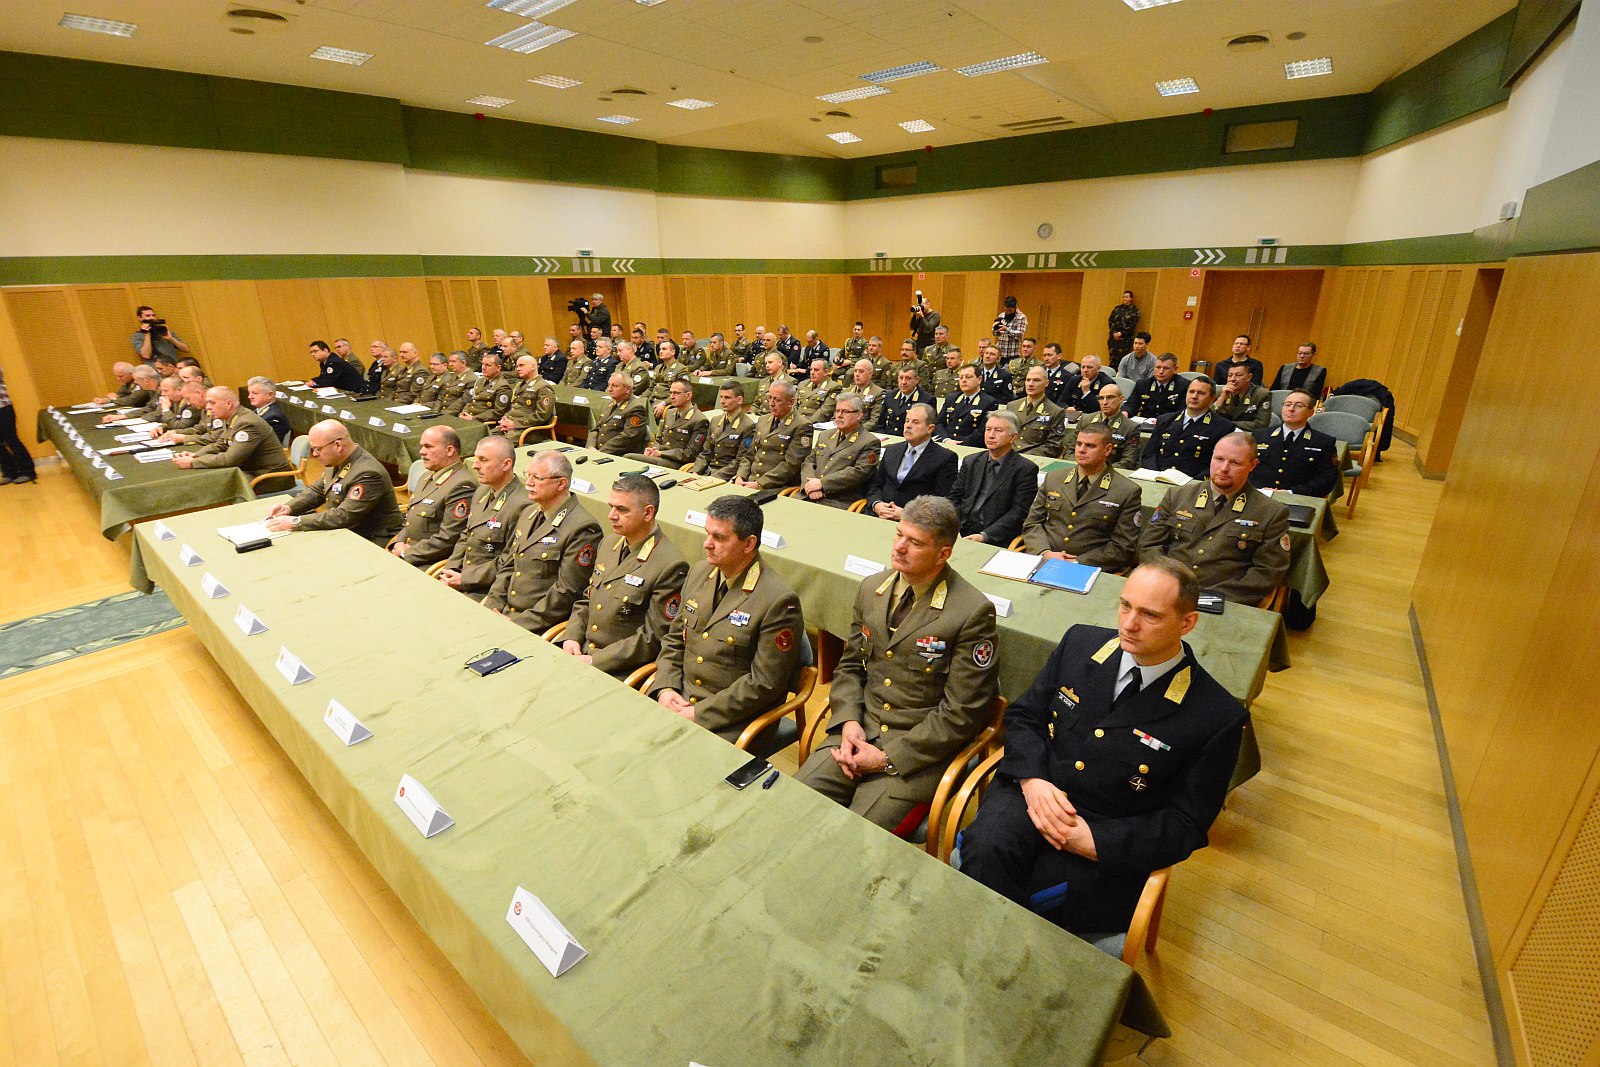 Biztonság, haderőfejlesztés - feladatszabó értekezlet a parancsnokságon